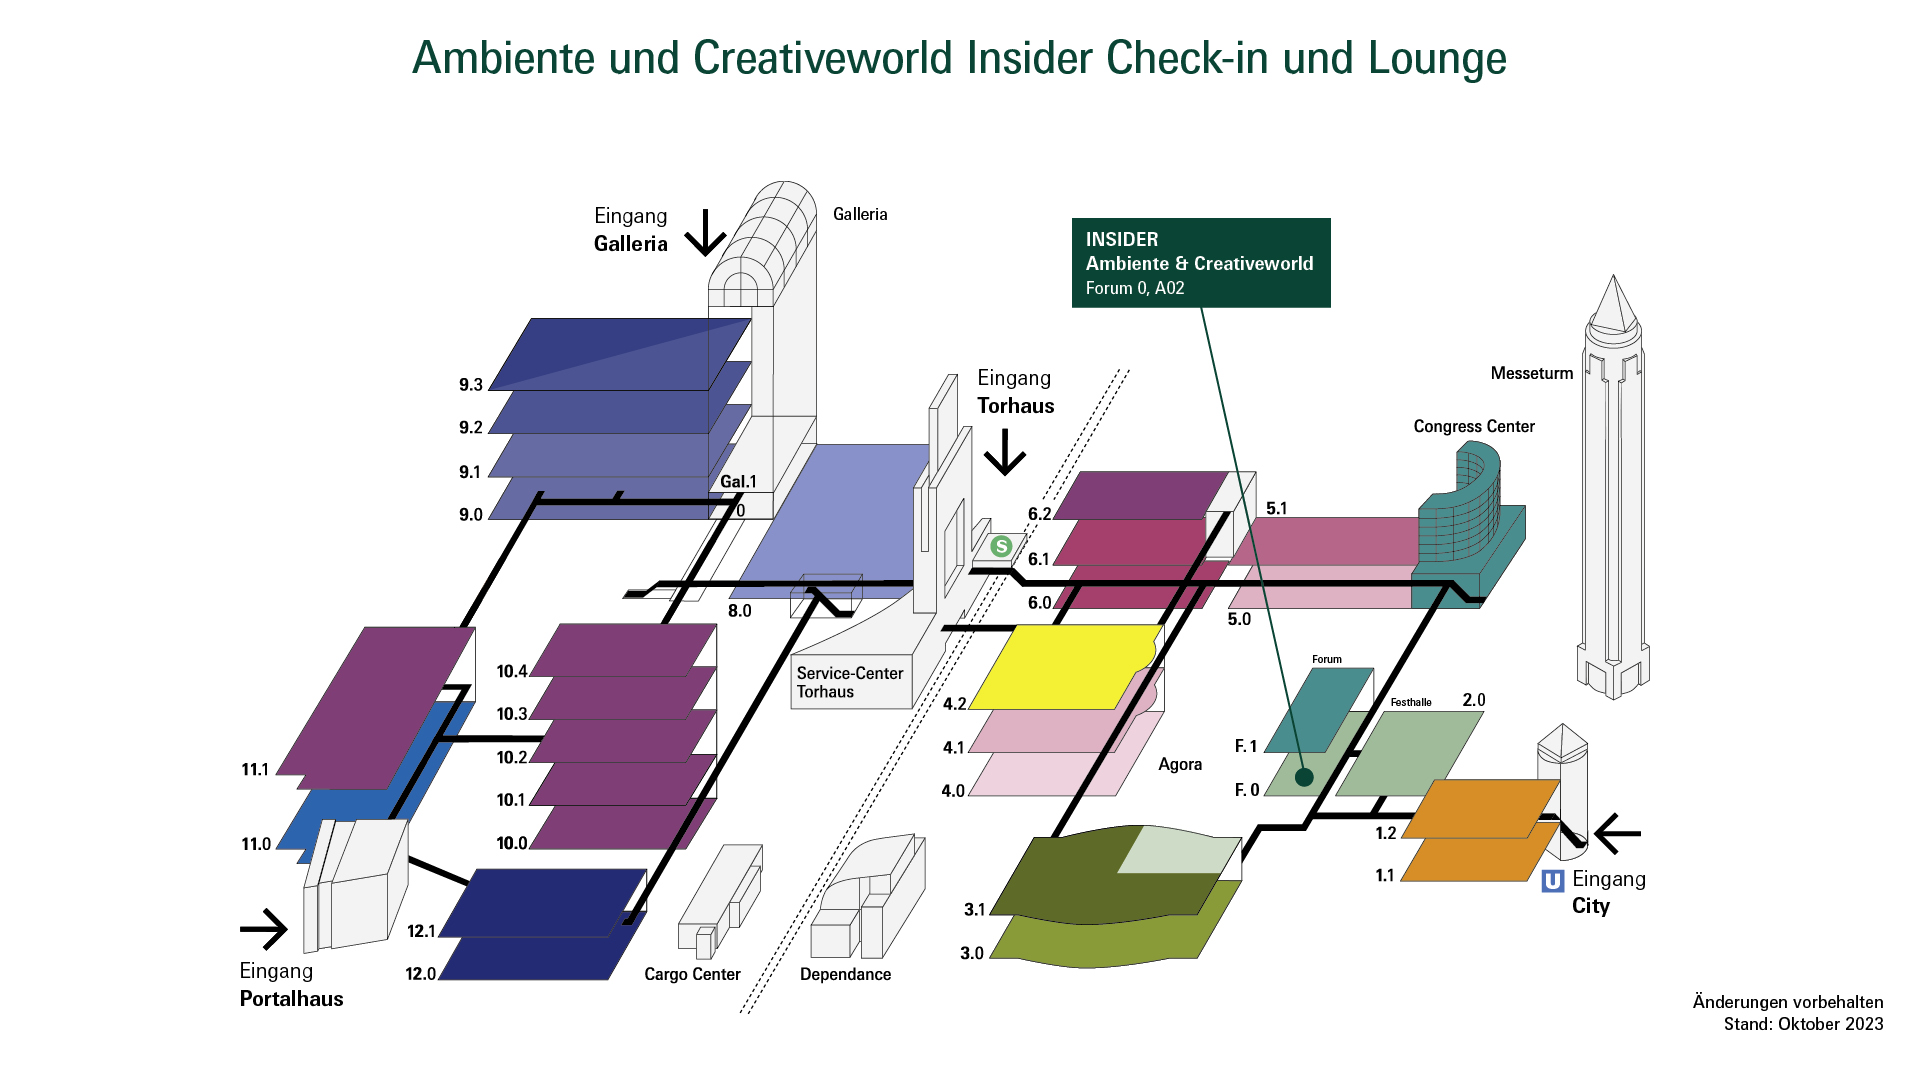 Geländeplan zur Creativeworld, Ambiente und Christmasworld mit der Insider Lounge